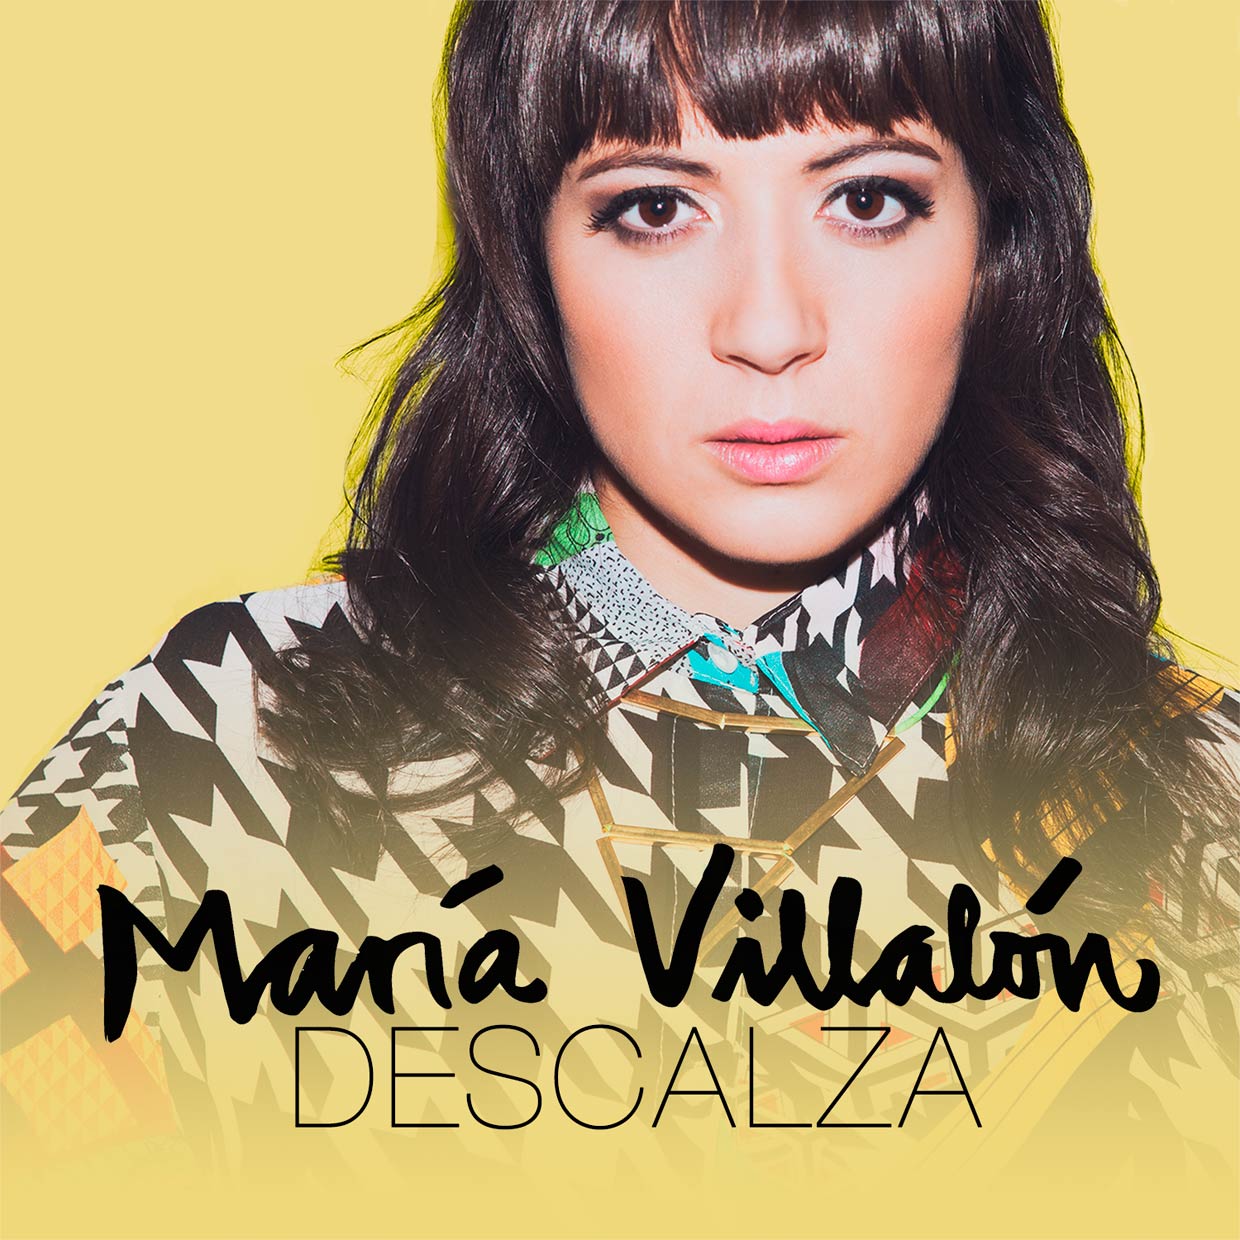 María Villalón: Descalza, la portada de la canción